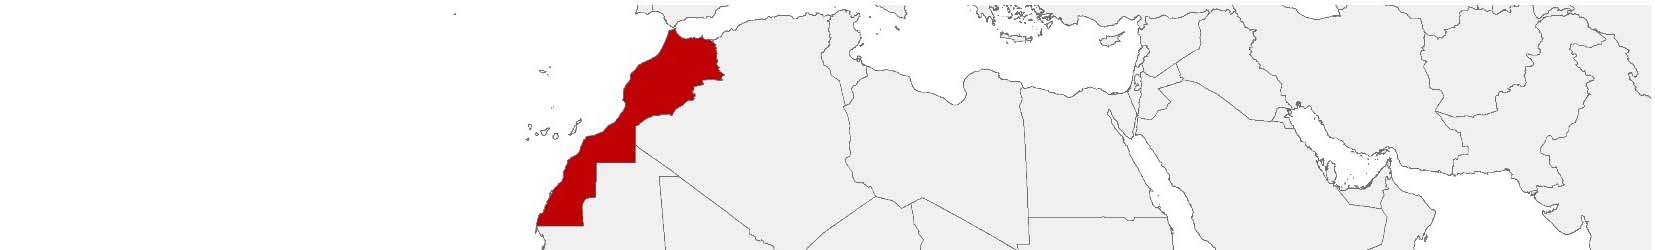 Kaufkraftdaten und soziodemographische Daten können auf einer Karte von Marokko mithilfe der Gebietsgrenzen Communes und Provinces dargestellt werden.